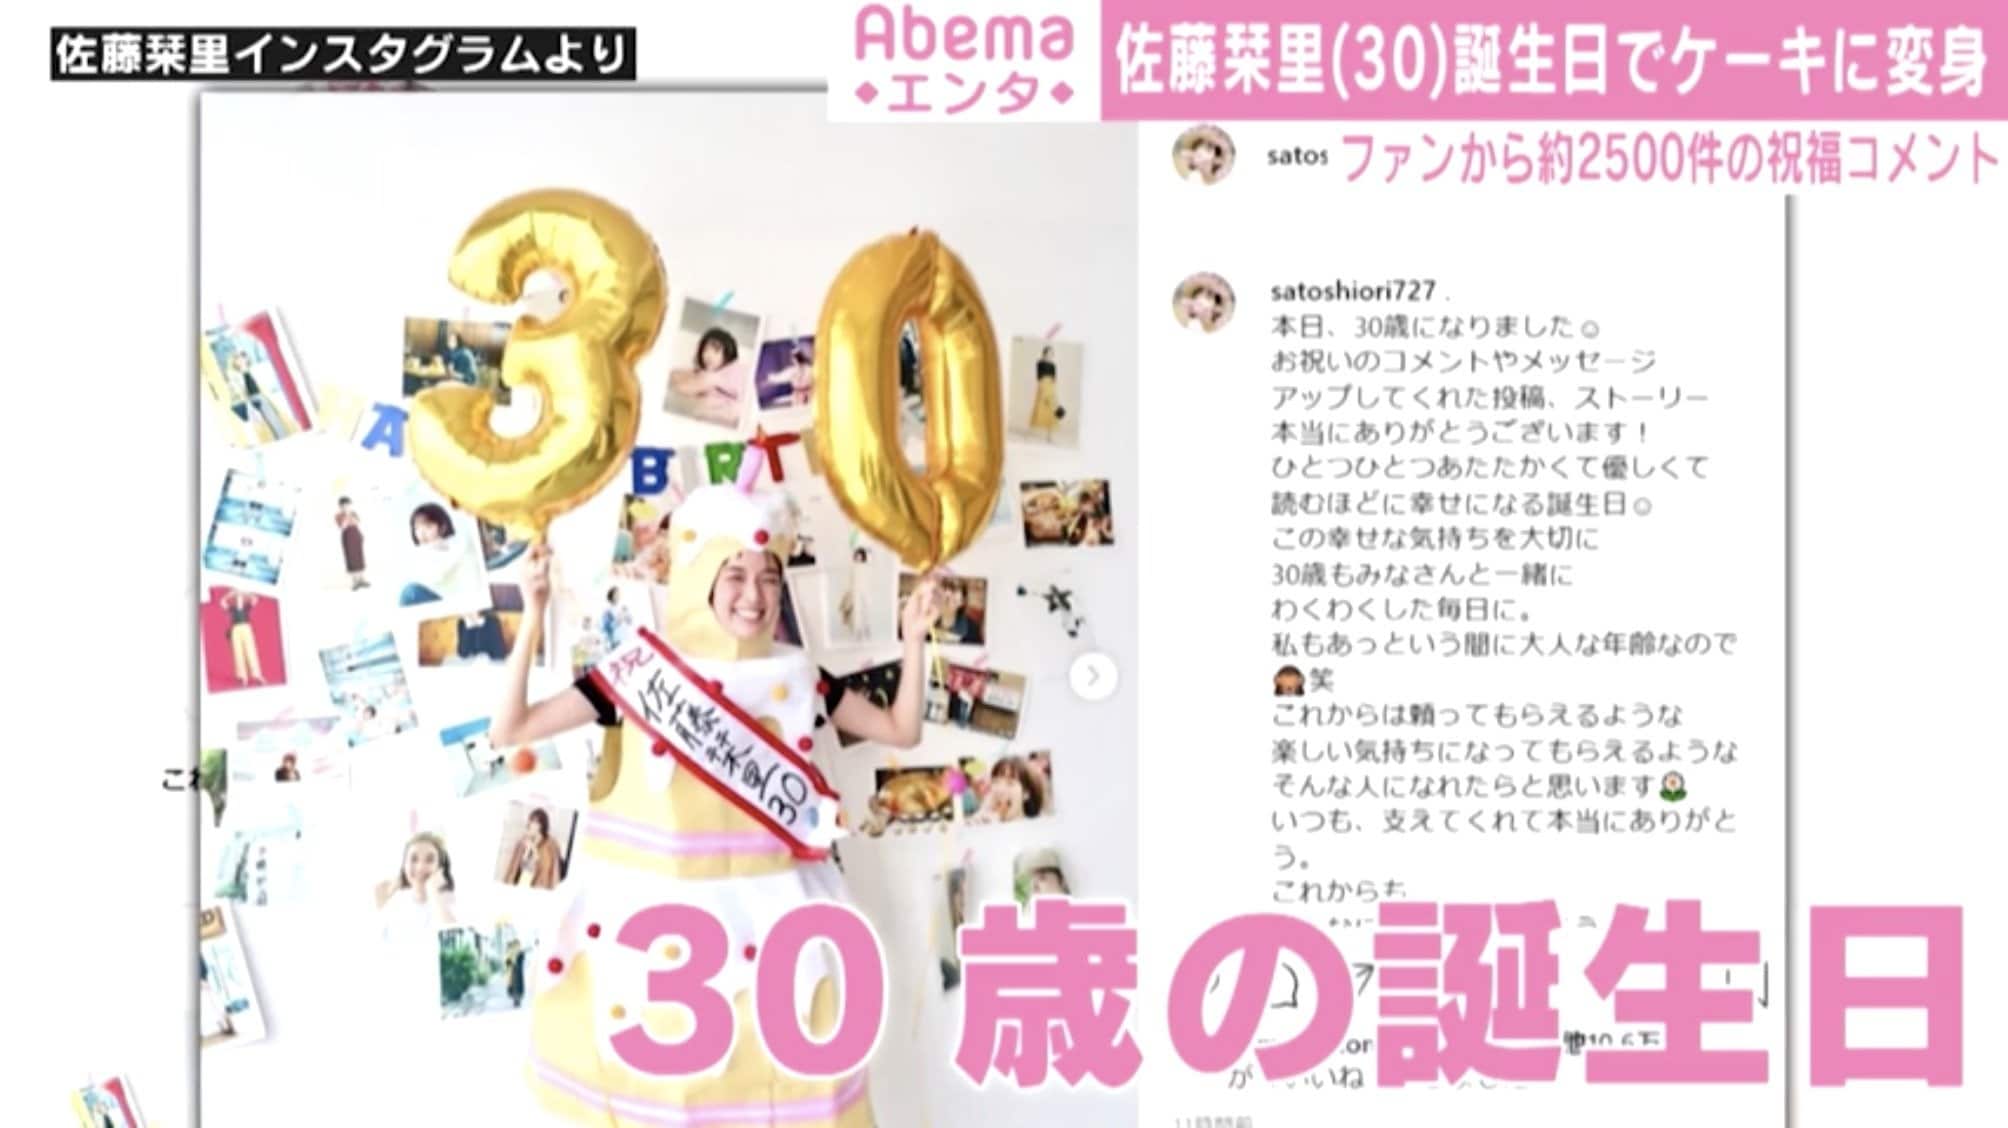 佐藤栞里 30歳の誕生日を報告 あっという間に大人な年齢なので 祝福コメント殺到 芸能 Abema Times